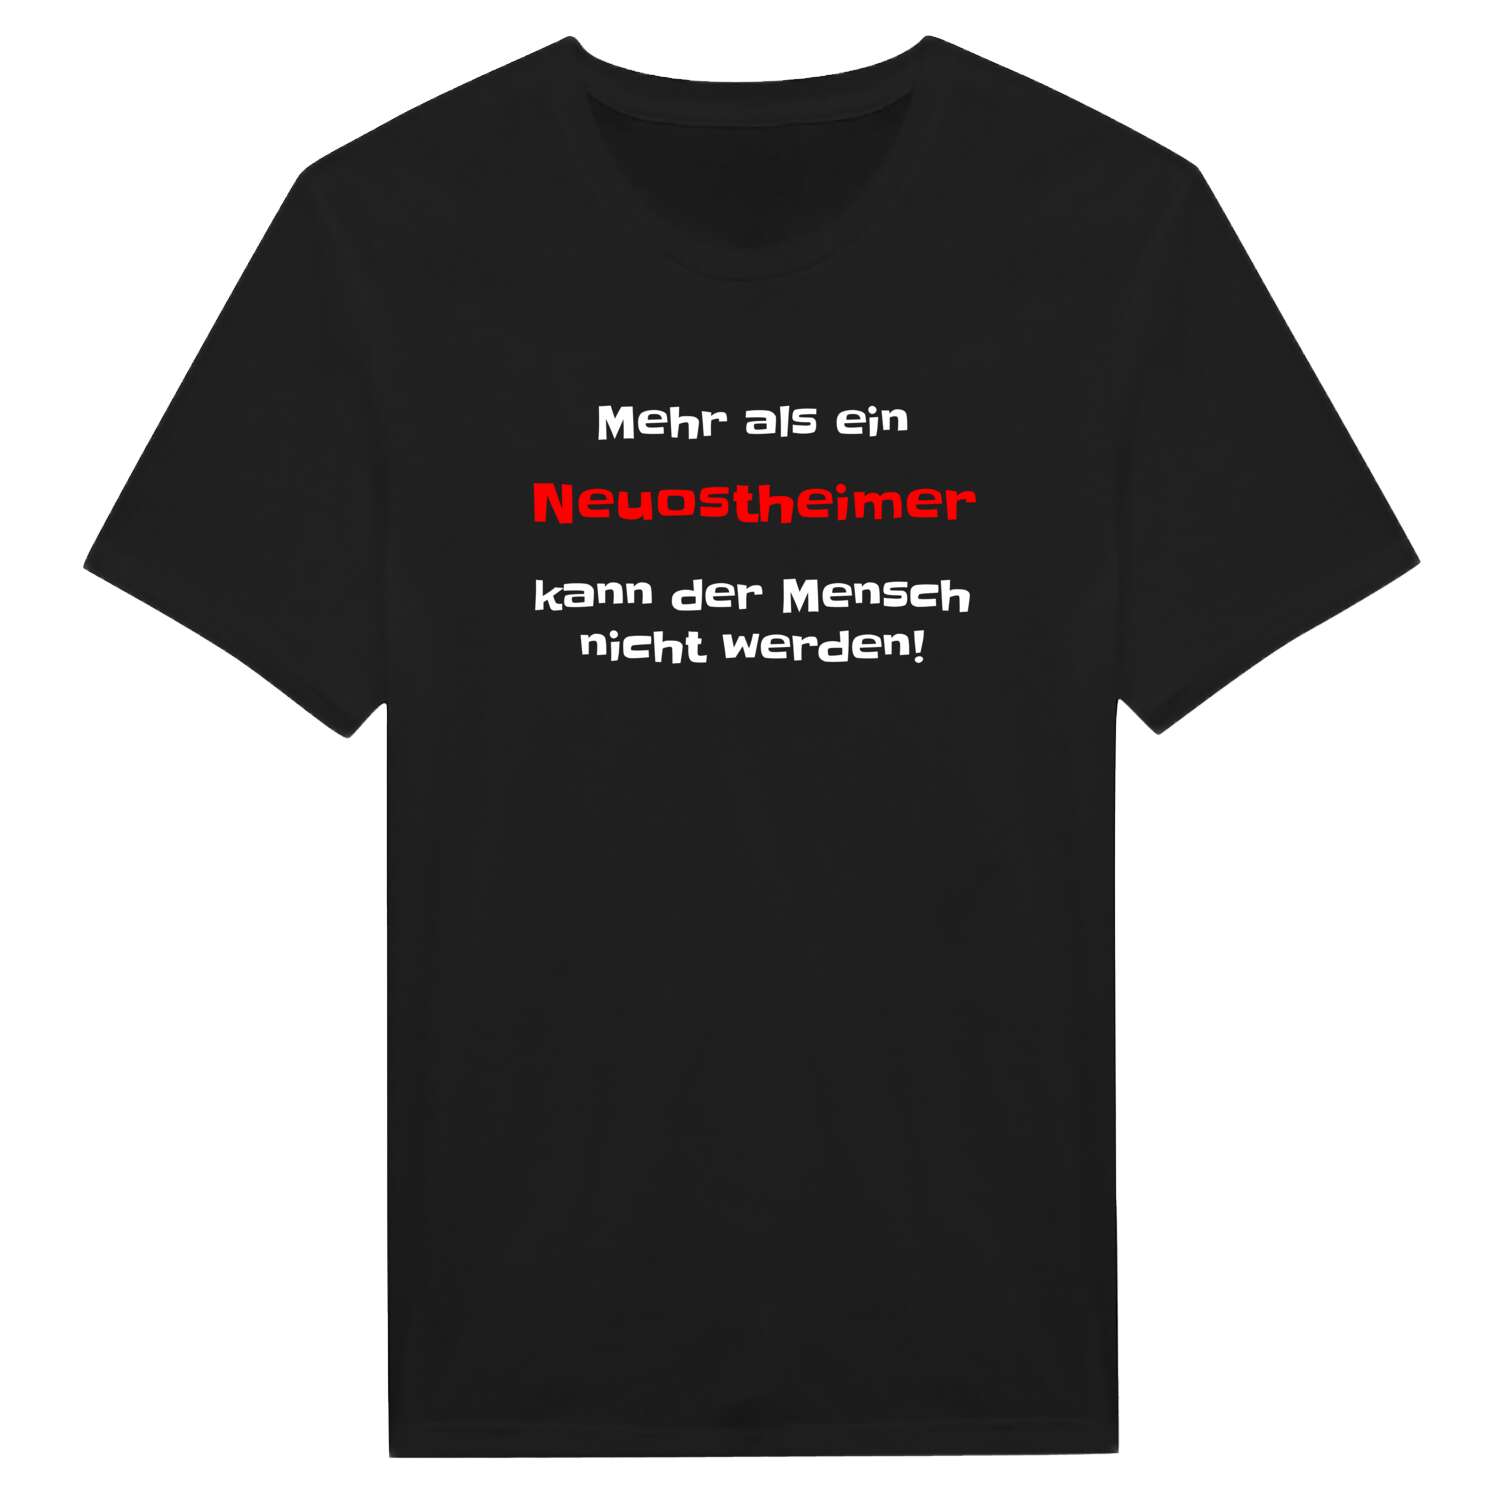 Neuostheim T-Shirt »Mehr als ein«